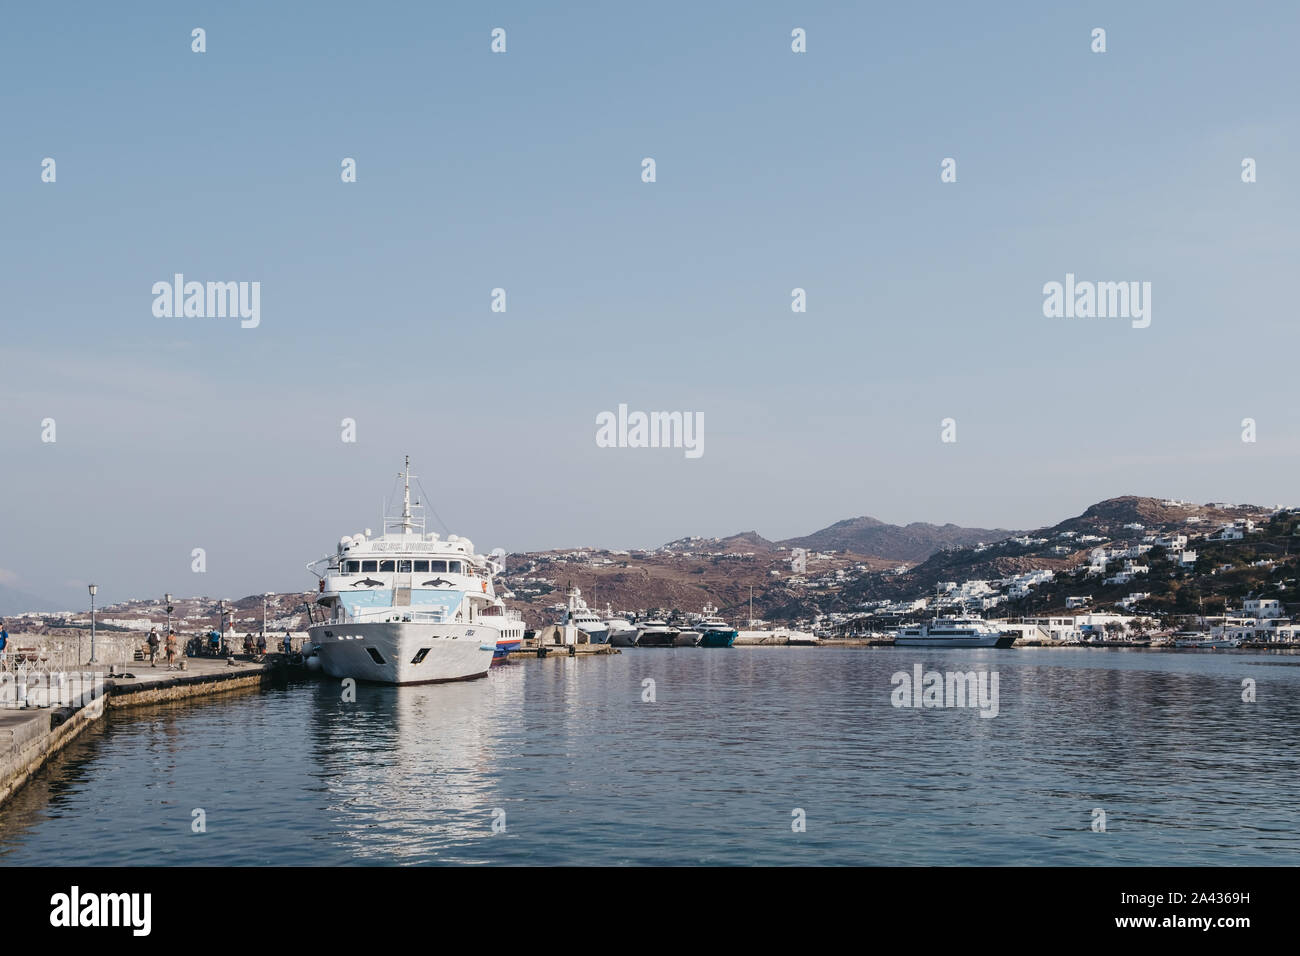 La città di Mykonos, Grecia- Settembre 20, 2019: Delos Tours Orca barca ormeggiata in porto nuovo nella città di Mykonos. Esso trasporta persone alla storica isola di Foto Stock